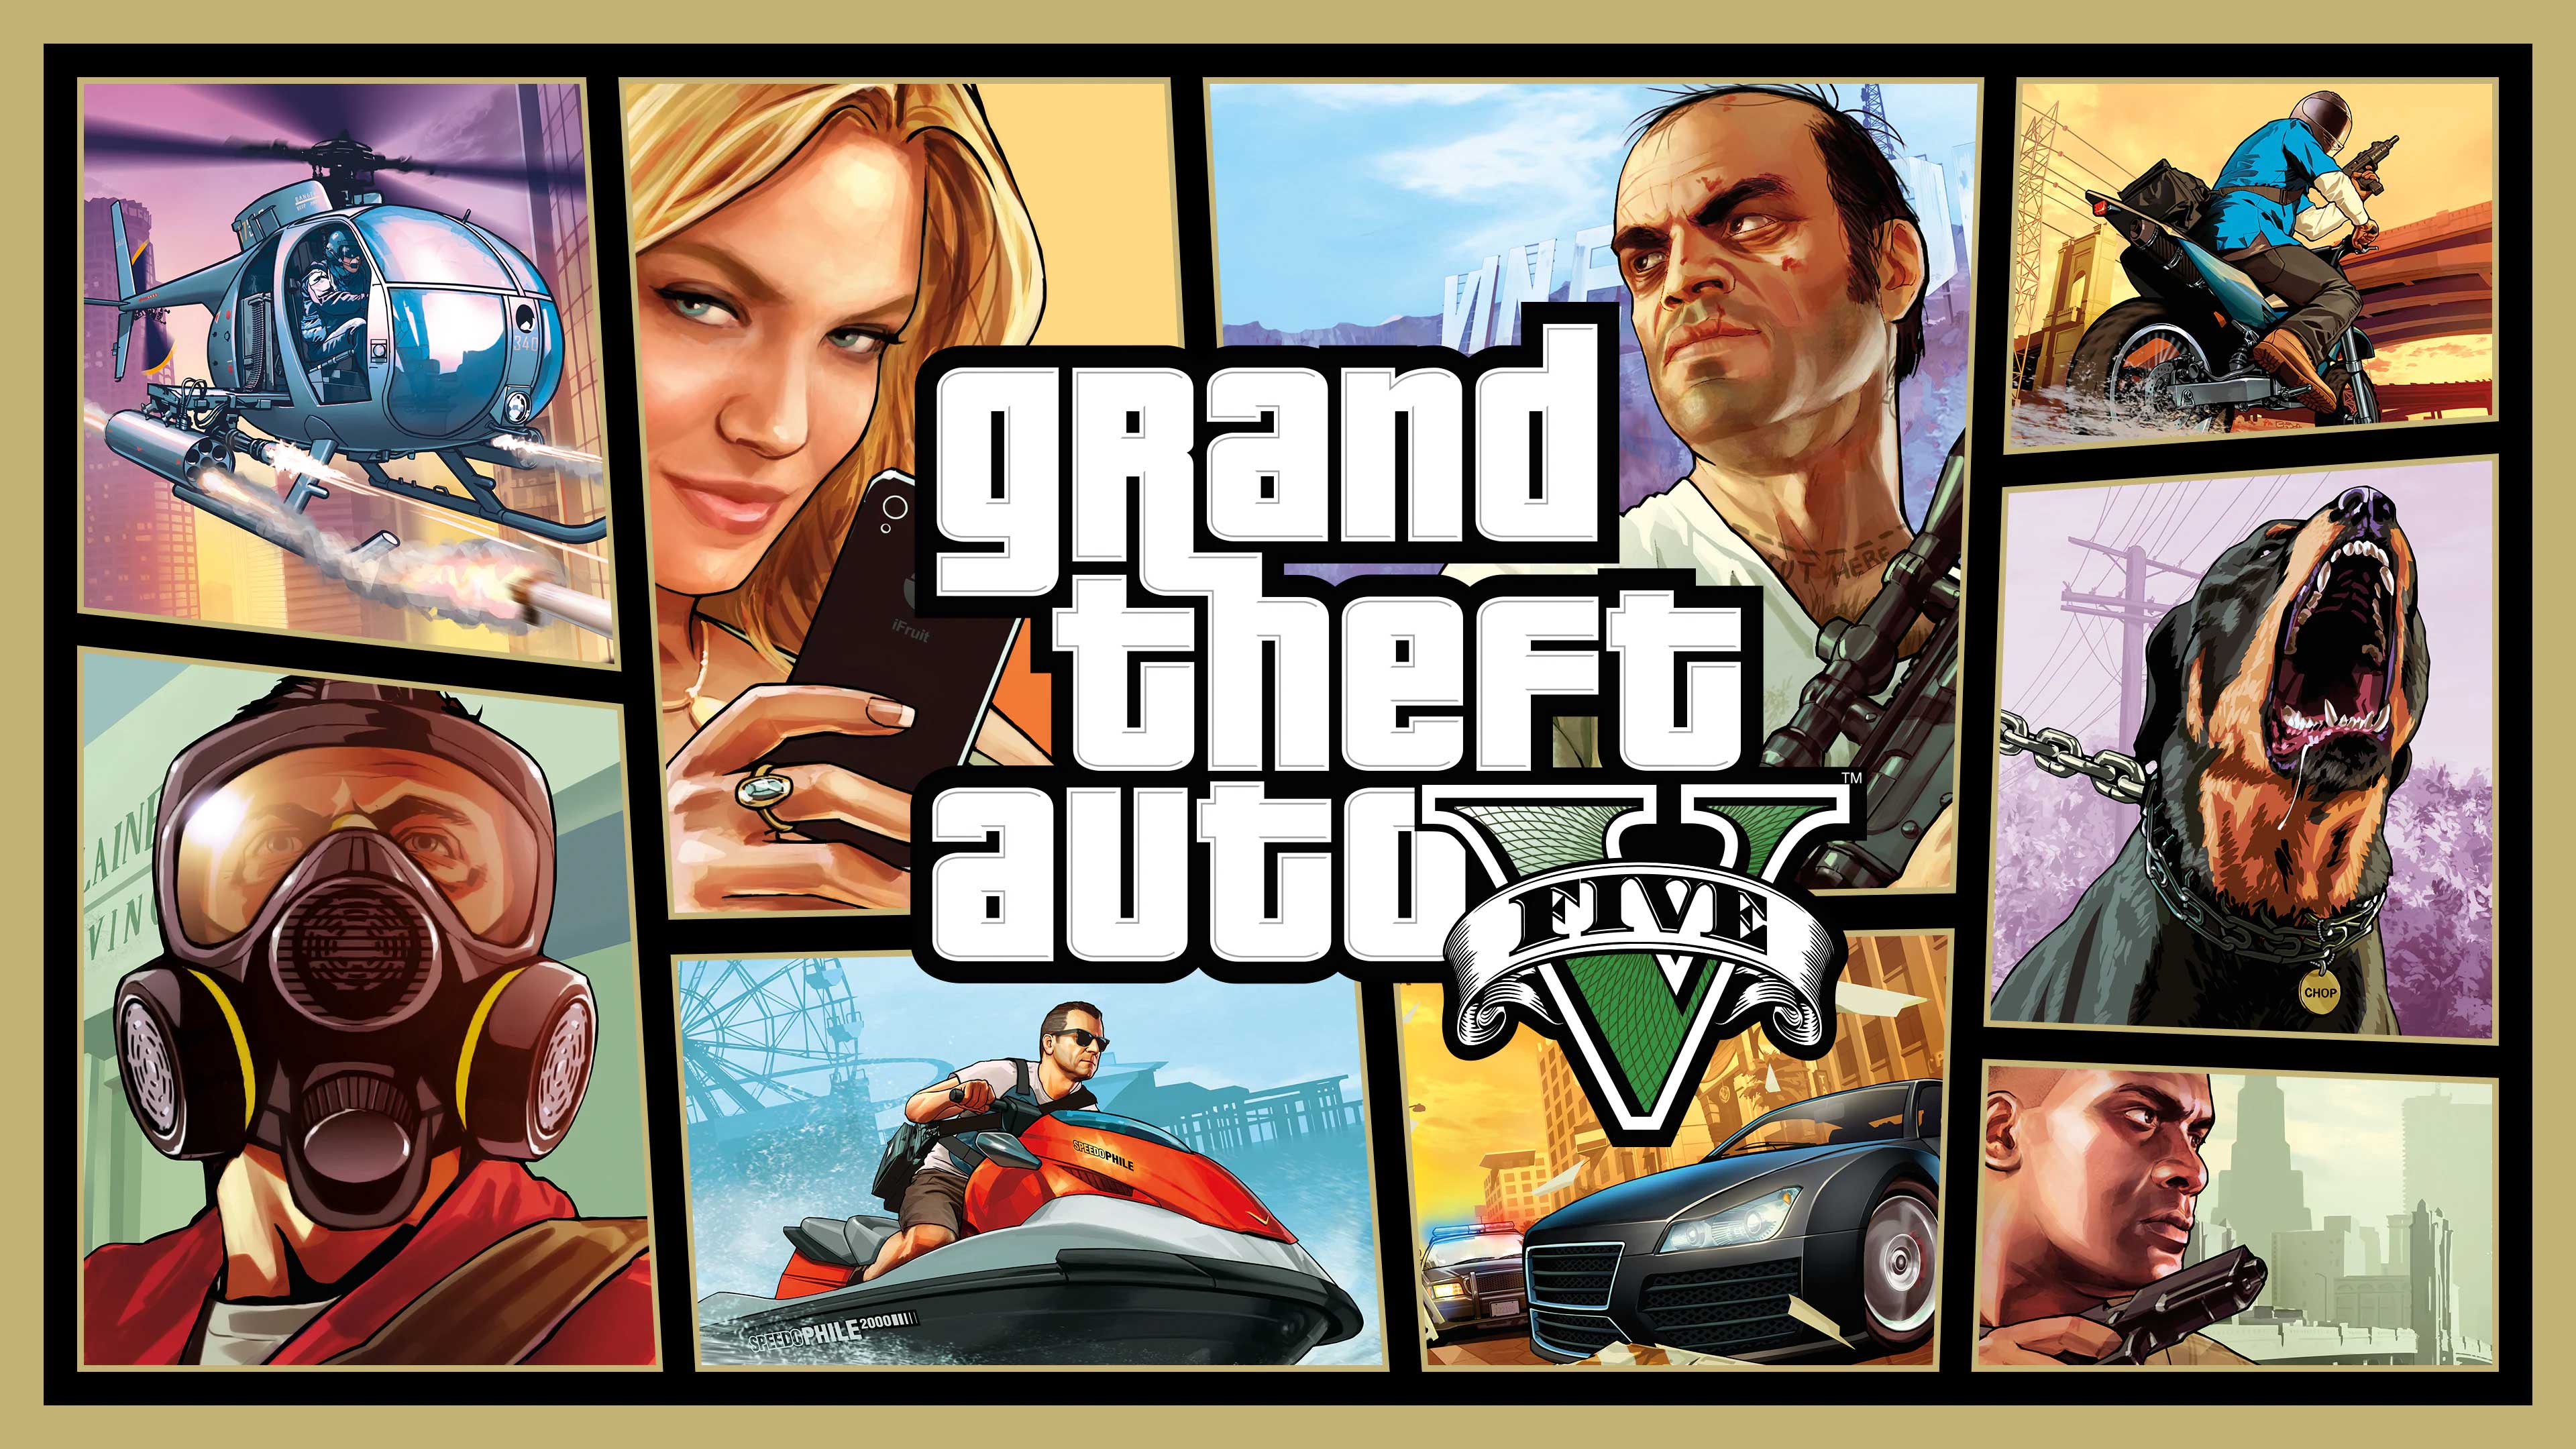 Grand Theft Auto V, Is Gamebul, isgamebul.com